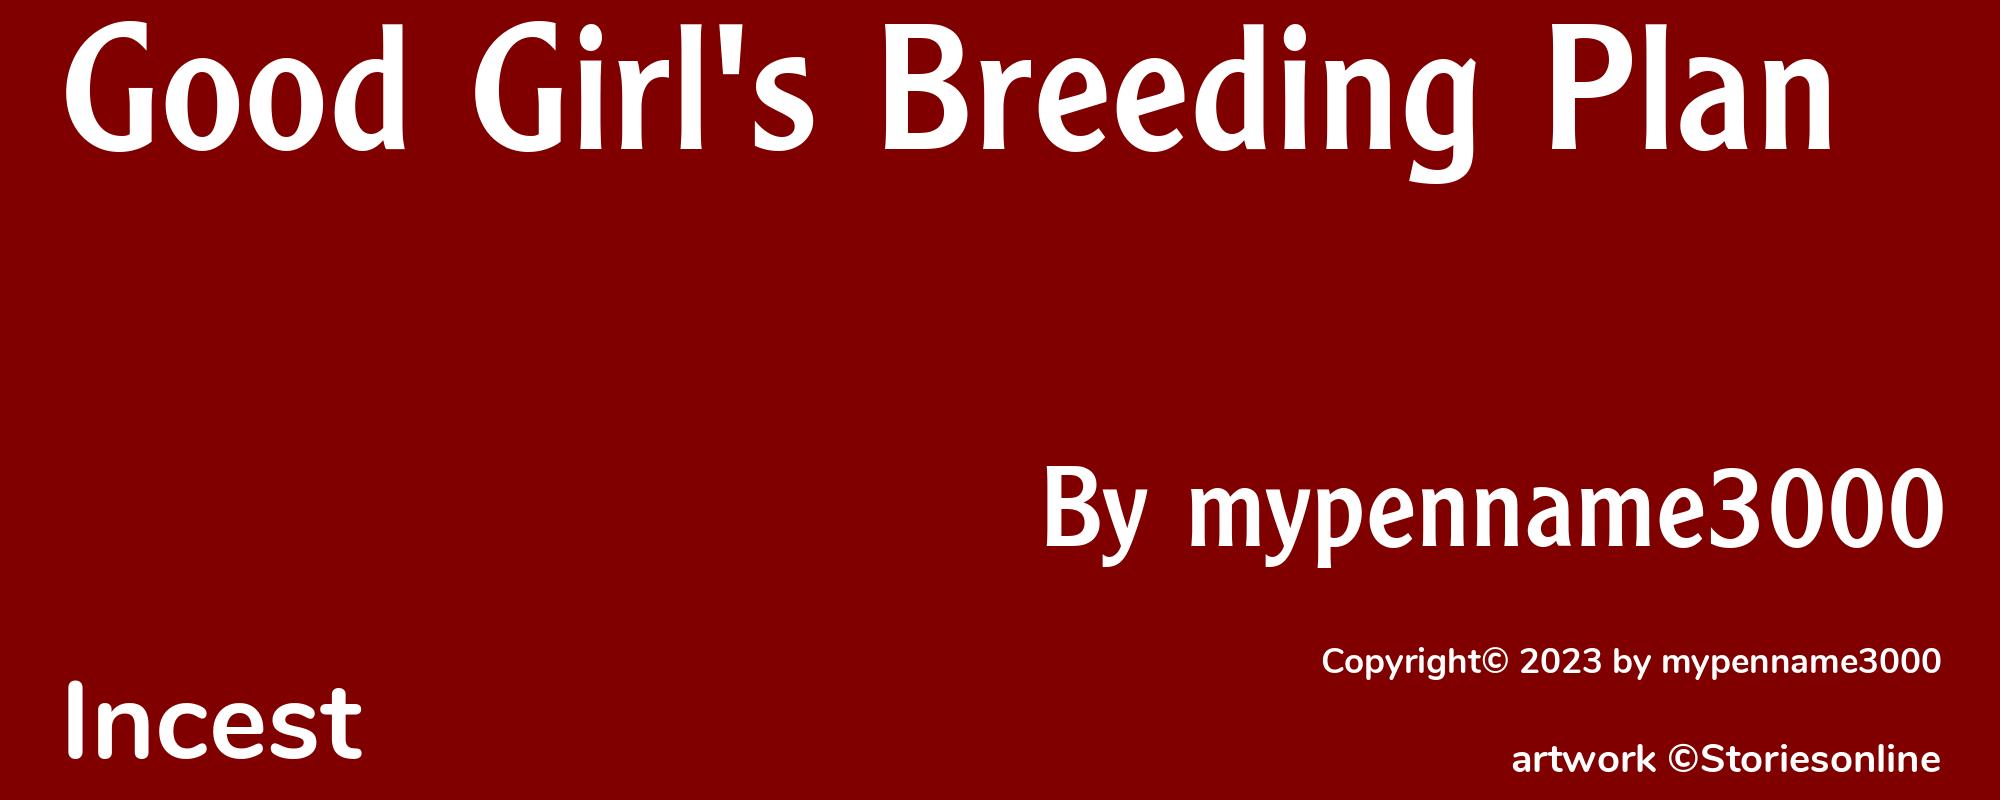 Good Girl's Breeding Plan - Cover